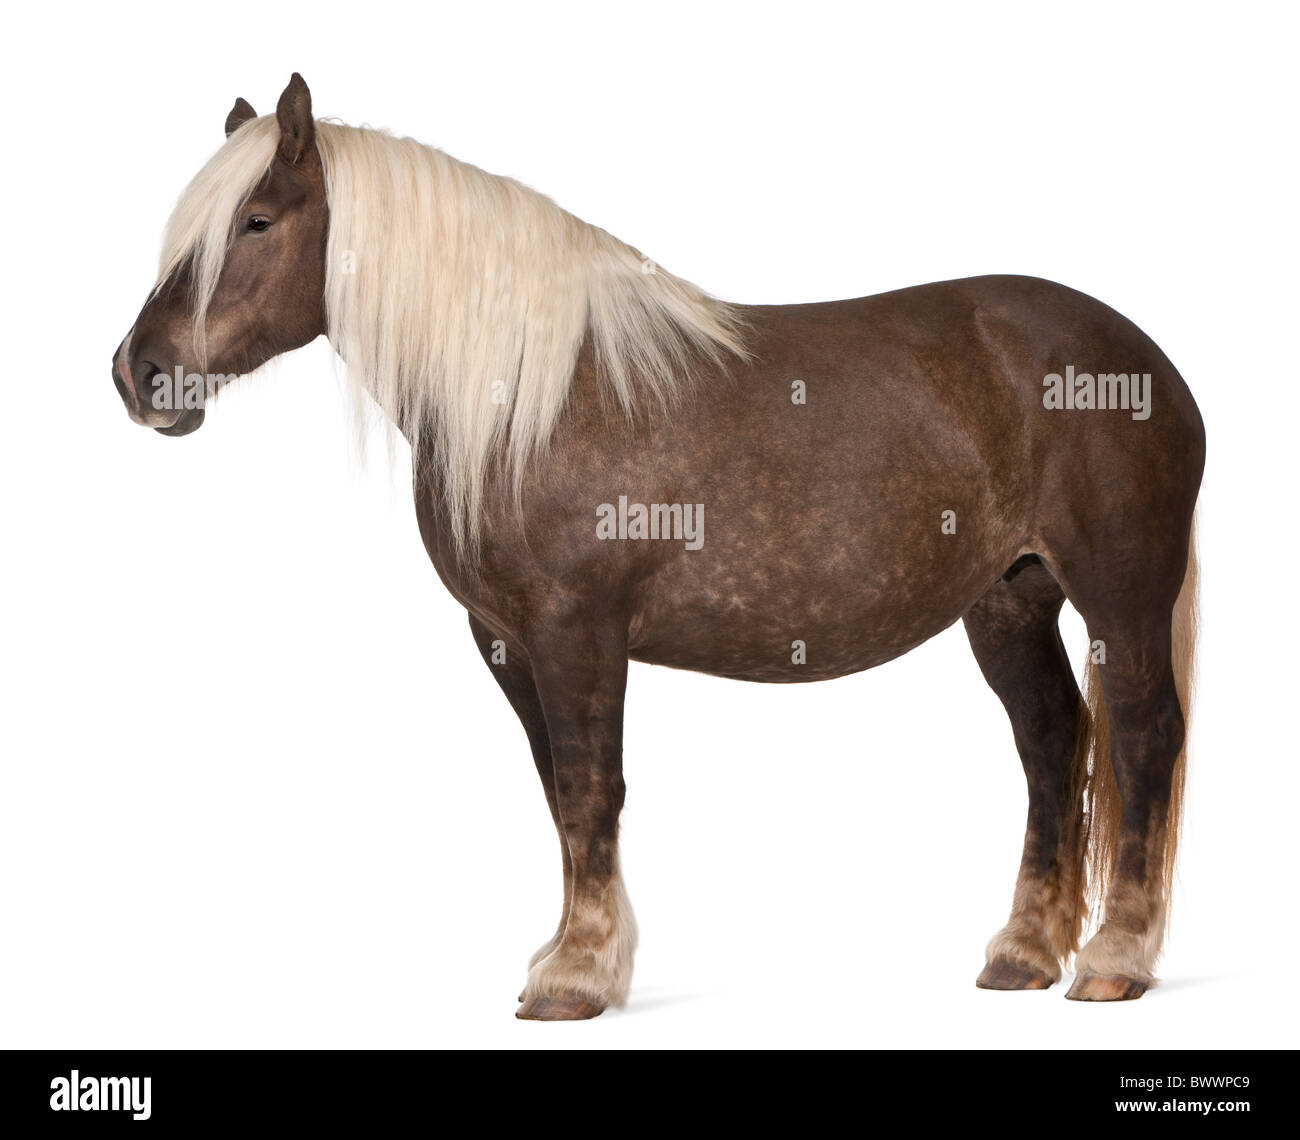 Comtois caballo, un caballo de tiro, Equus caballus, de 10 años, parados delante de un fondo blanco Foto de stock